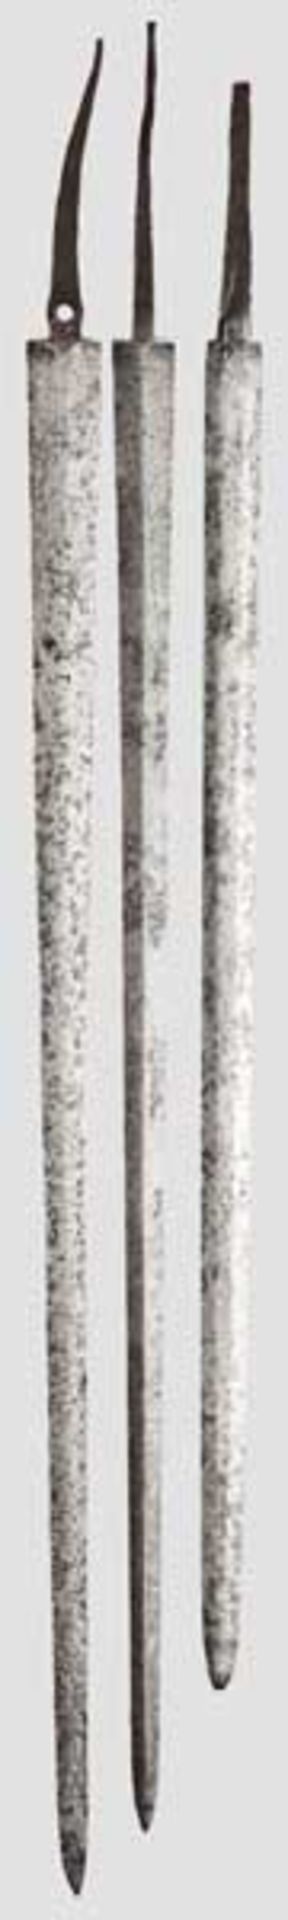 Drei Felddegenklingen, 18. Jhdt.   Unterschiedlich lange, zweischneidige Klingen mit konischen (